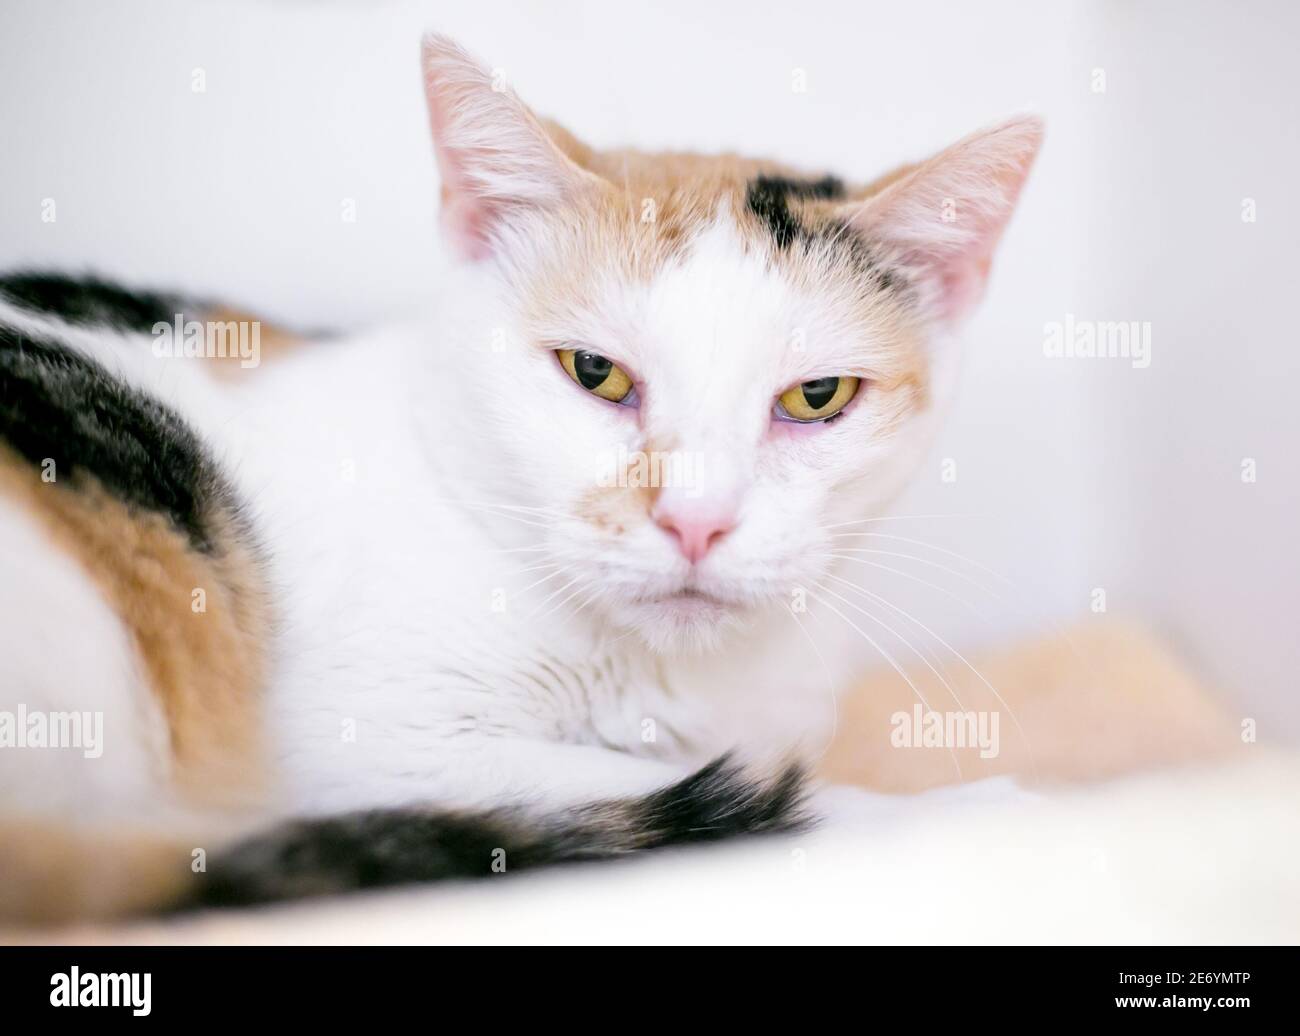 Un gatto calico shorthair sdraiato e guardando il macchina fotografica con un'espressione grumpia Foto Stock